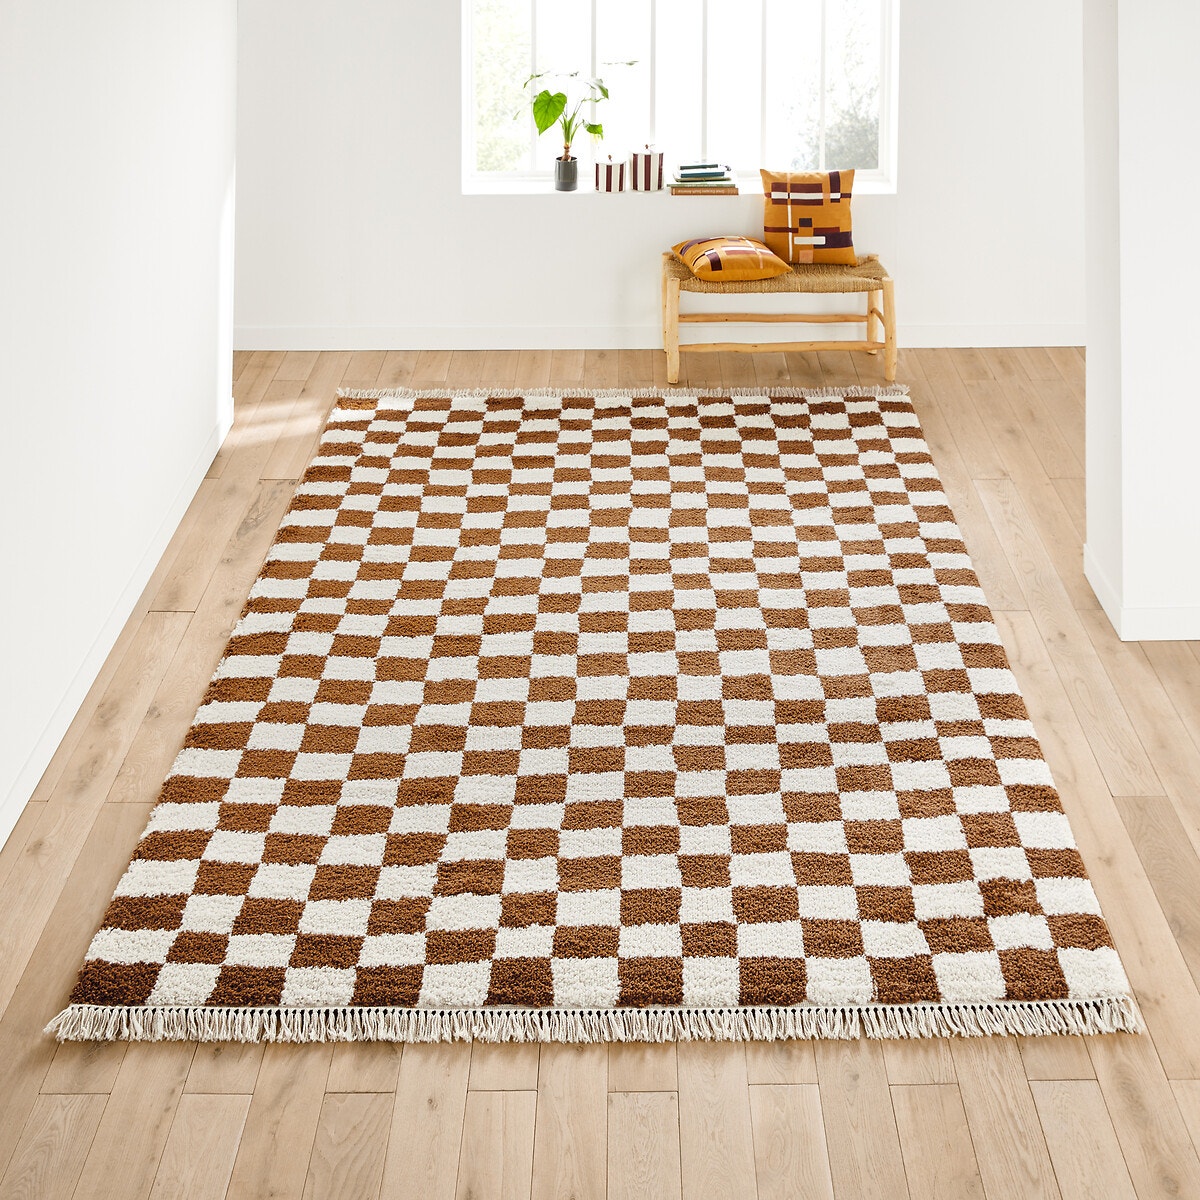 Σπίτι > Διακόσμηση > Χαλιά > Χαλιά καθιστικού Χαλί XL με μοτίβο σκακιέρας 240x330 cm